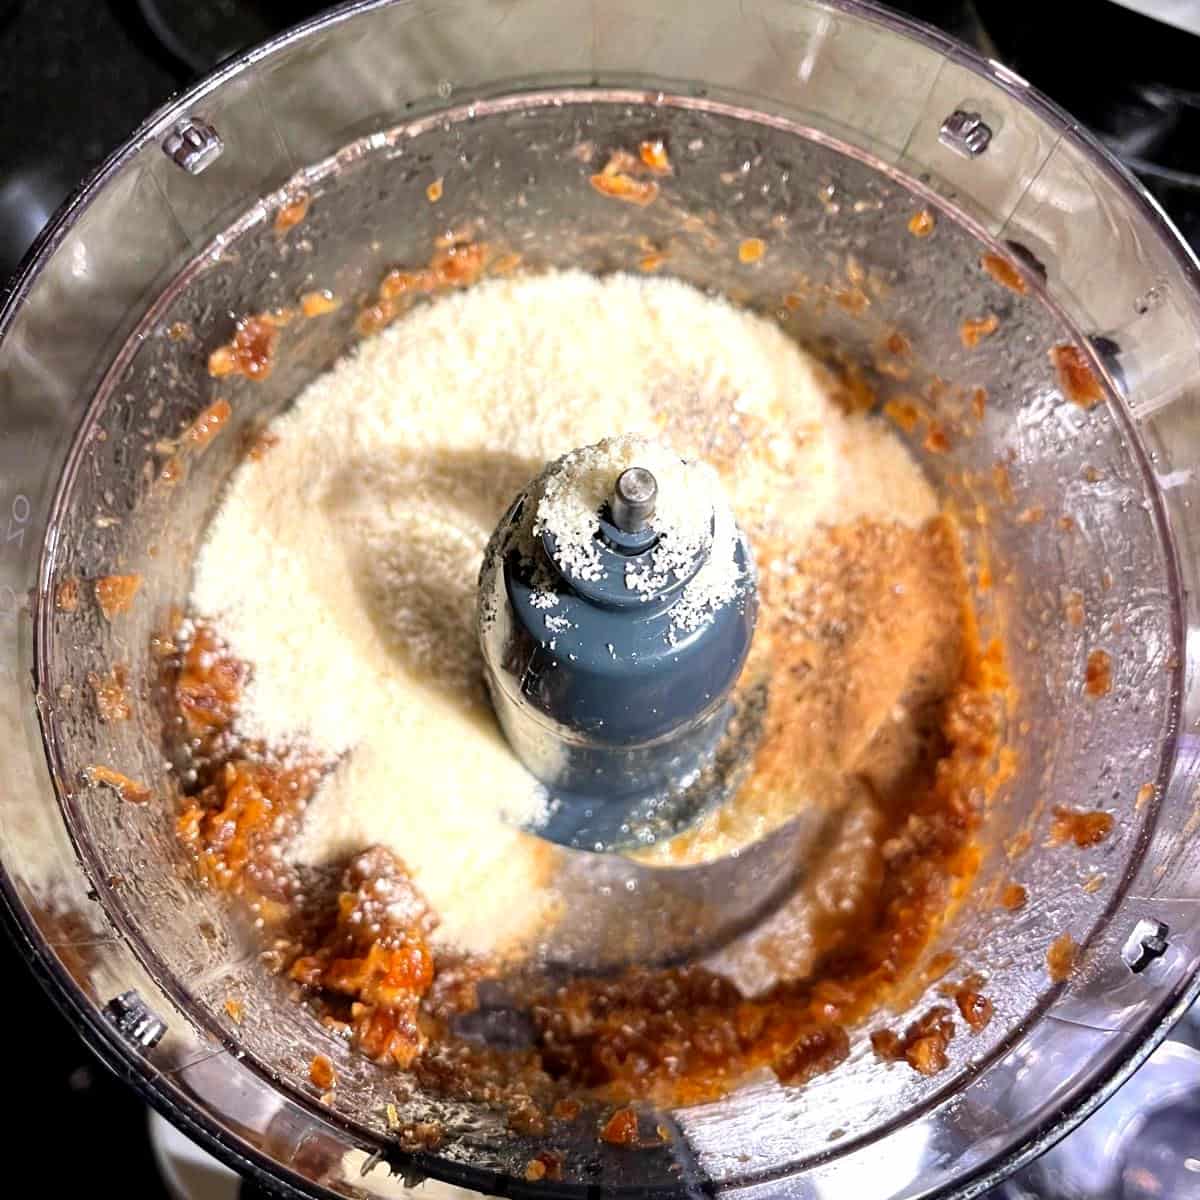 Ingredients for vegan almond flour cookies in food processor bowl.